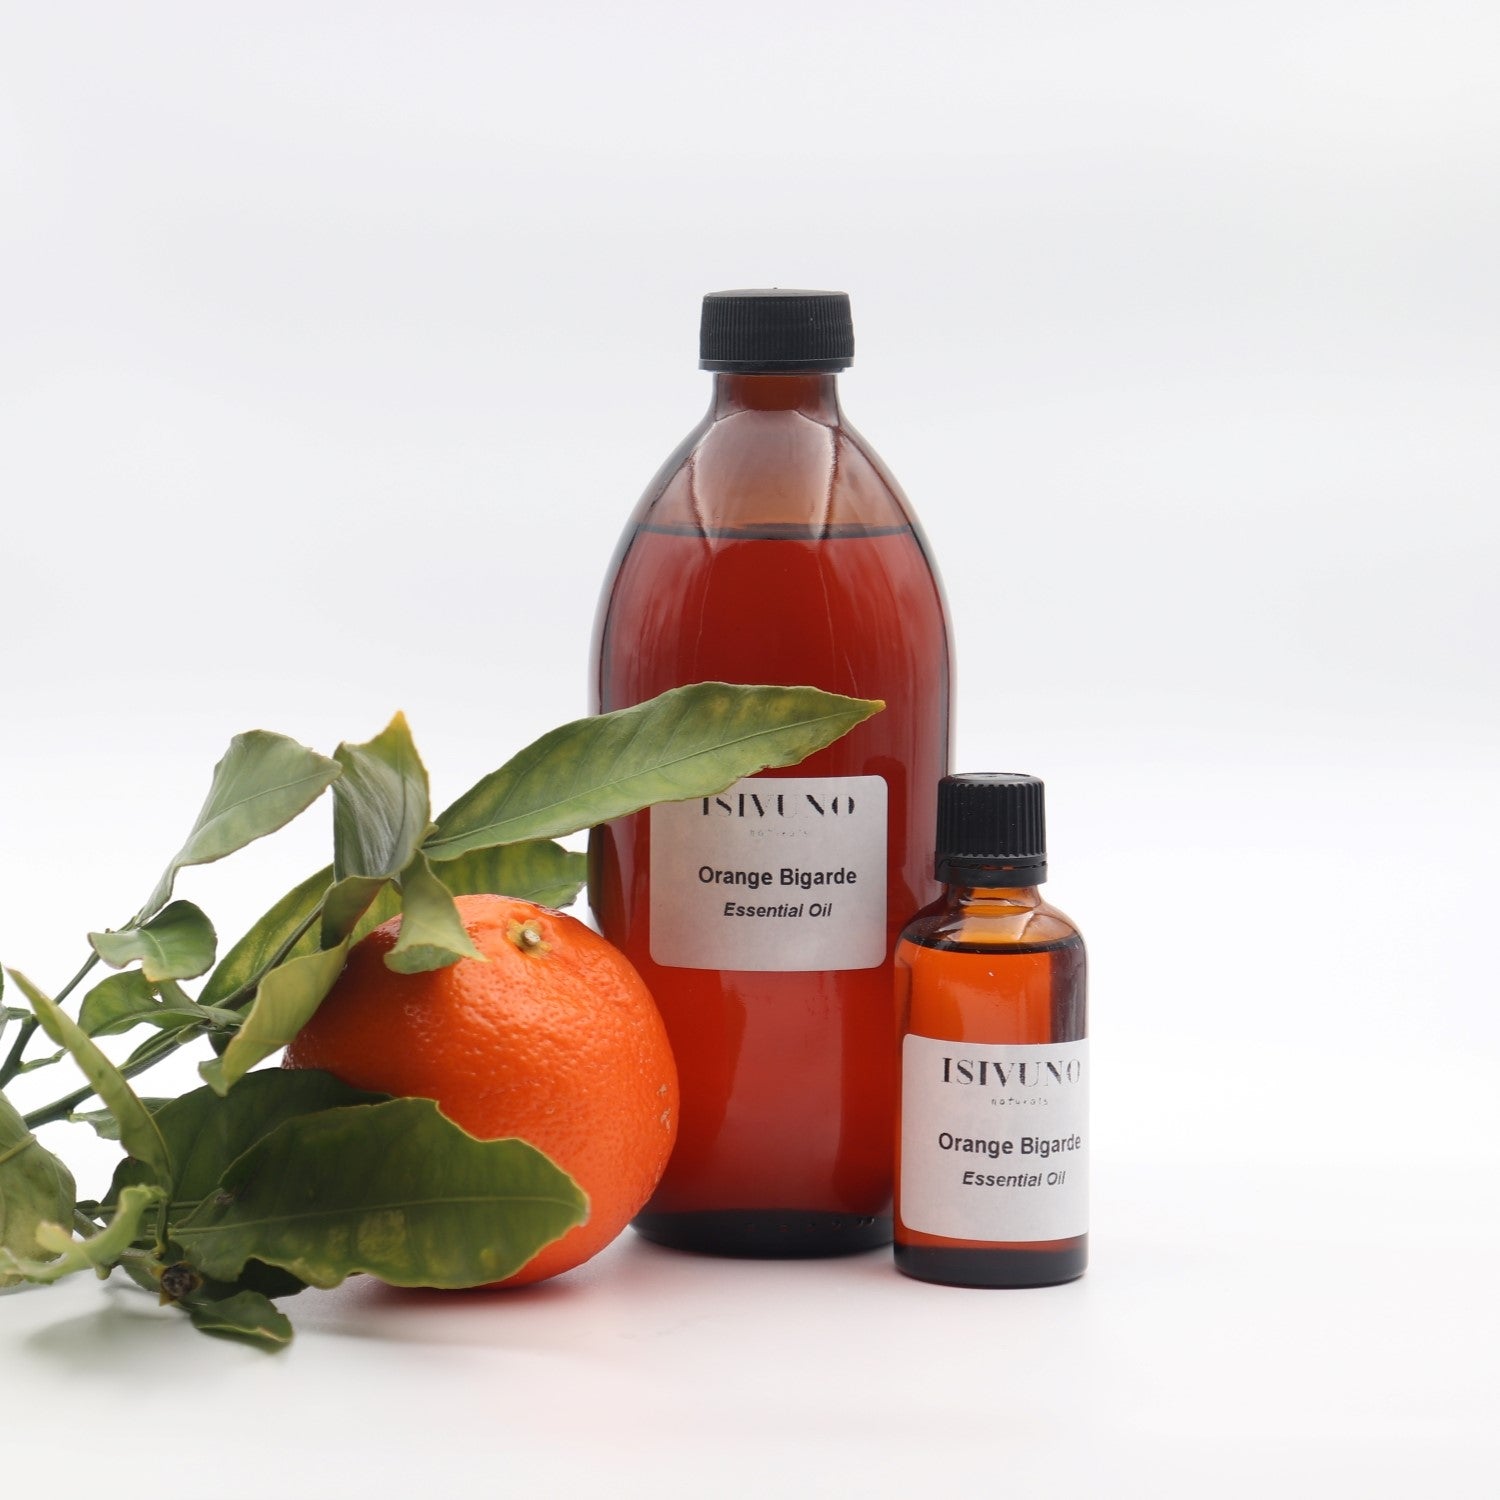 Orange Bigarade (Bitter Orange) Essential Oil